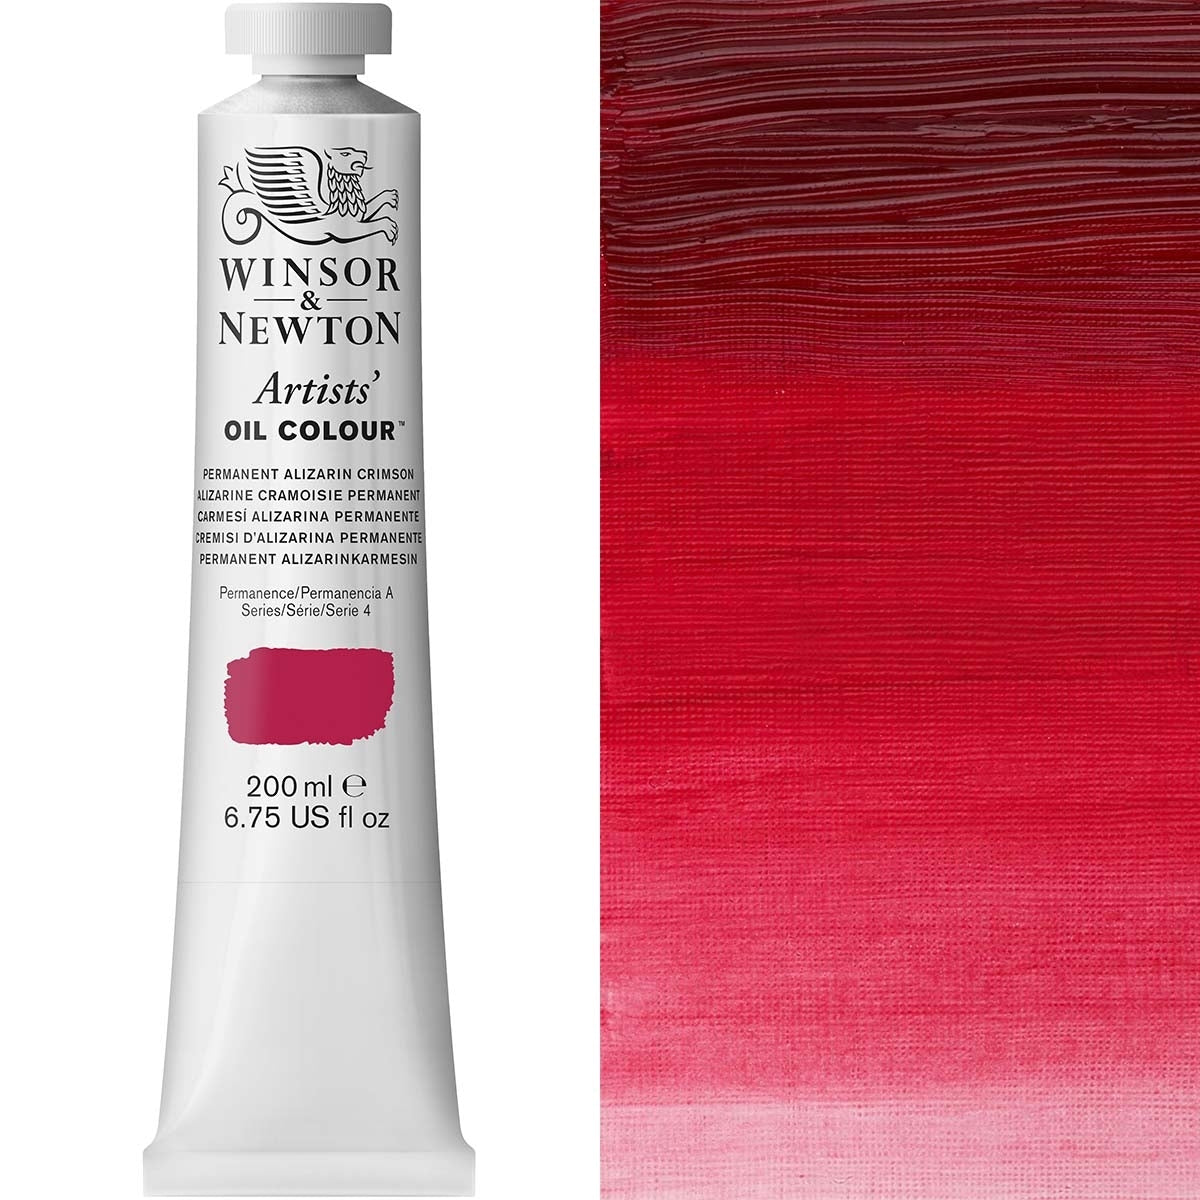 Winsor e Newton - Colore olio degli artisti - 200 ml - Alizarin Crimson permanente